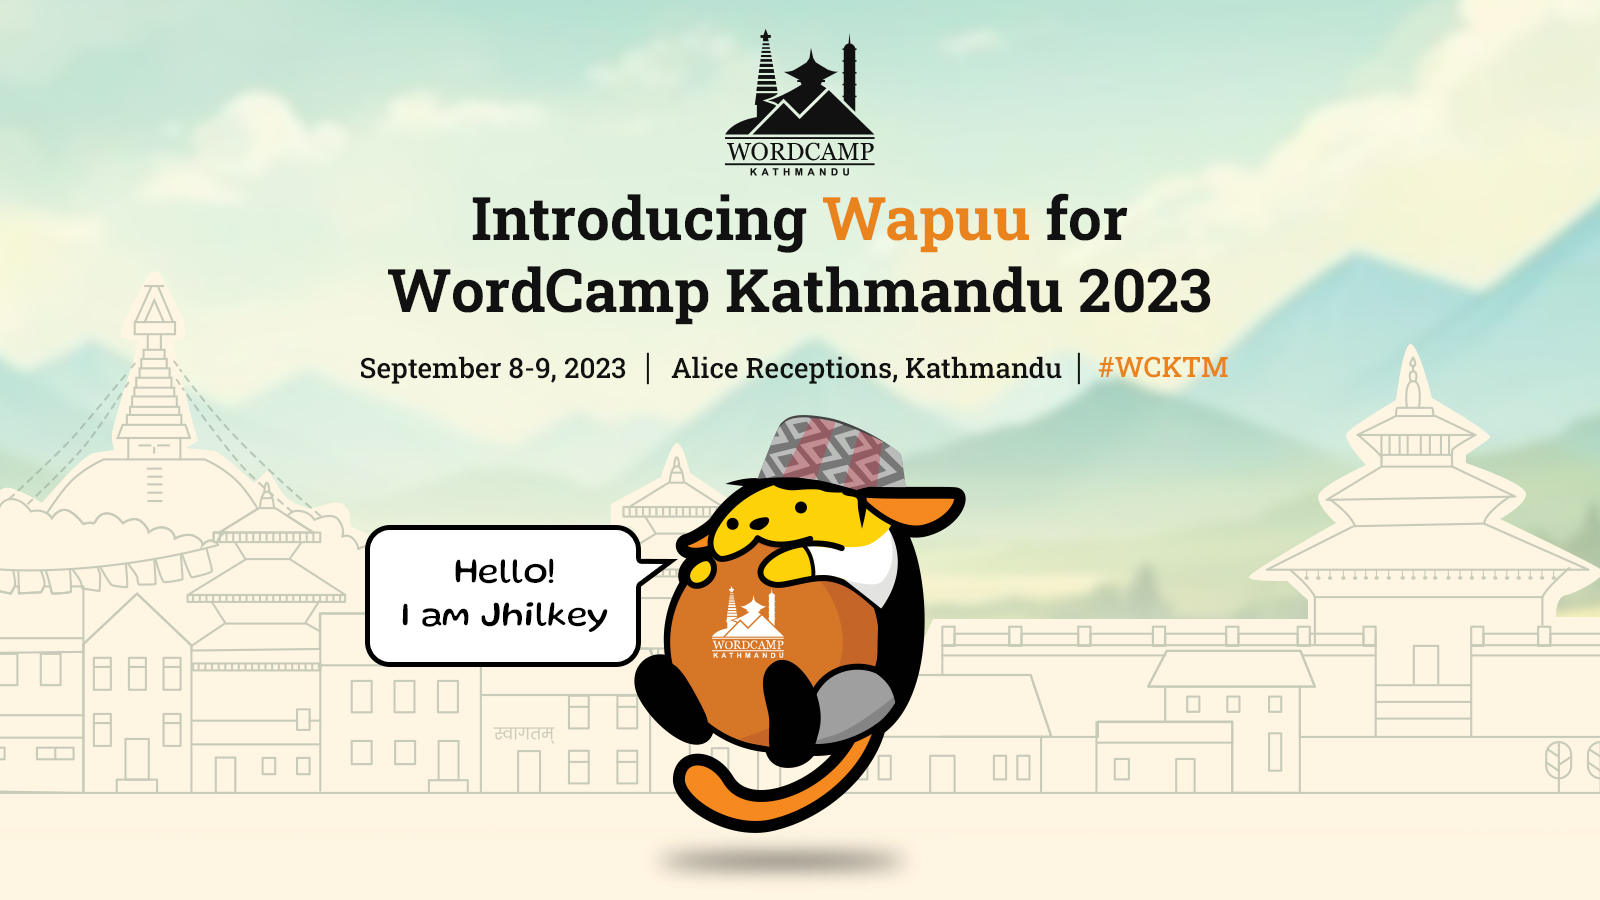 Introducing Wapuu for WordCamp Kathmandu 2023